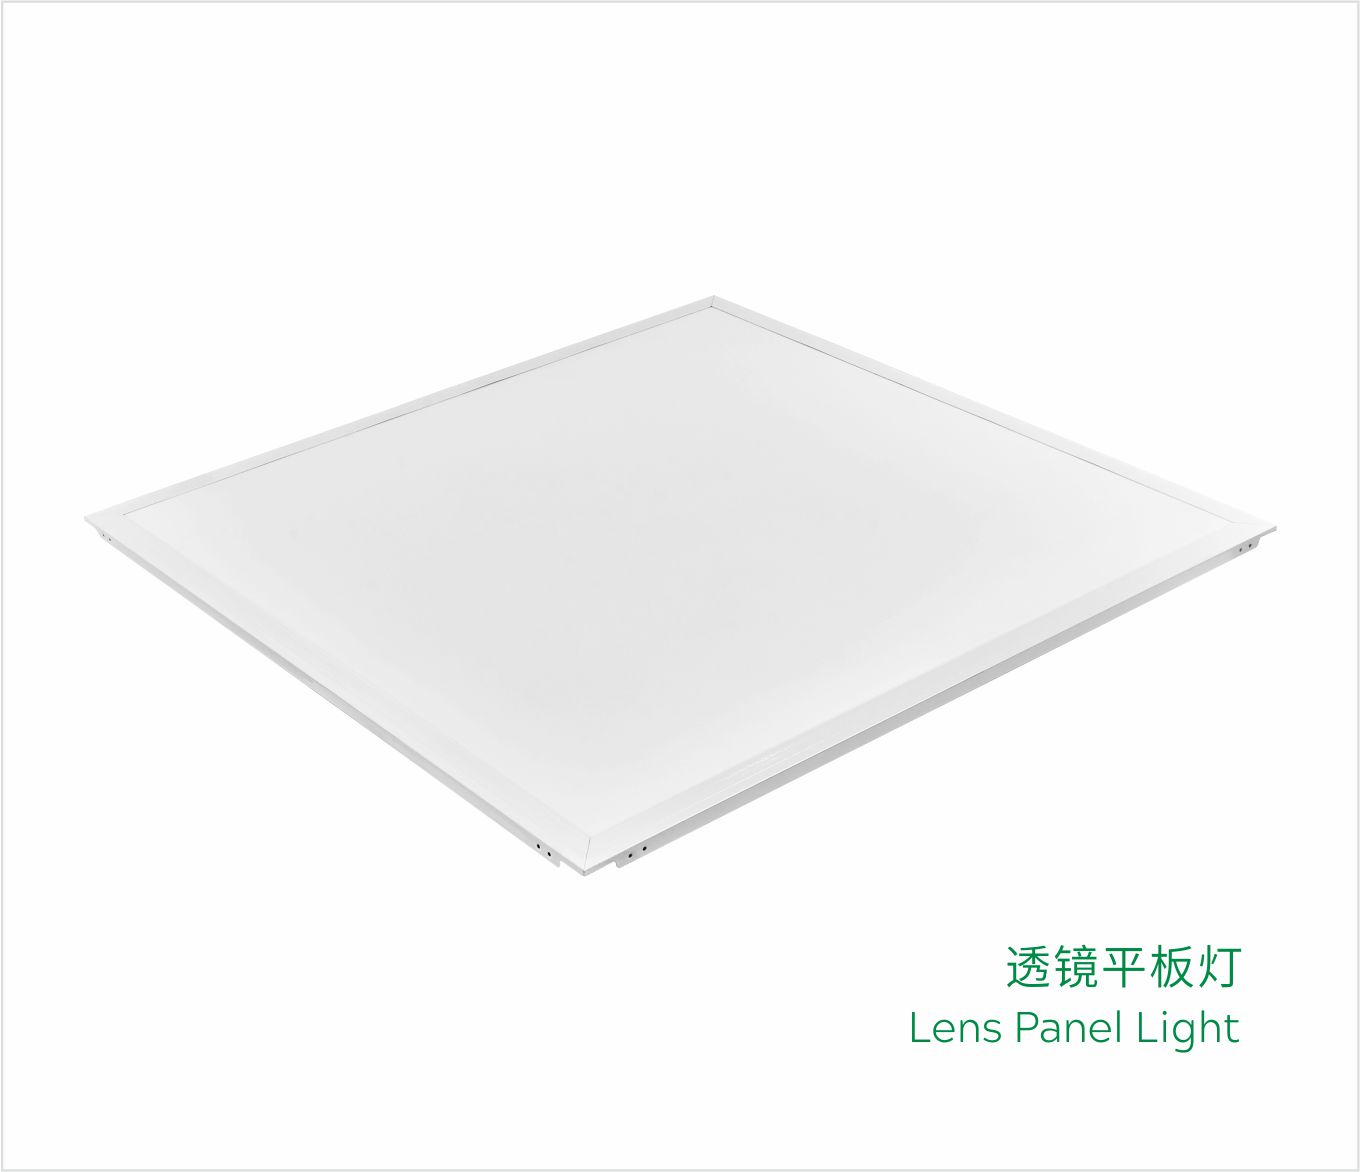 Lens Panel Light